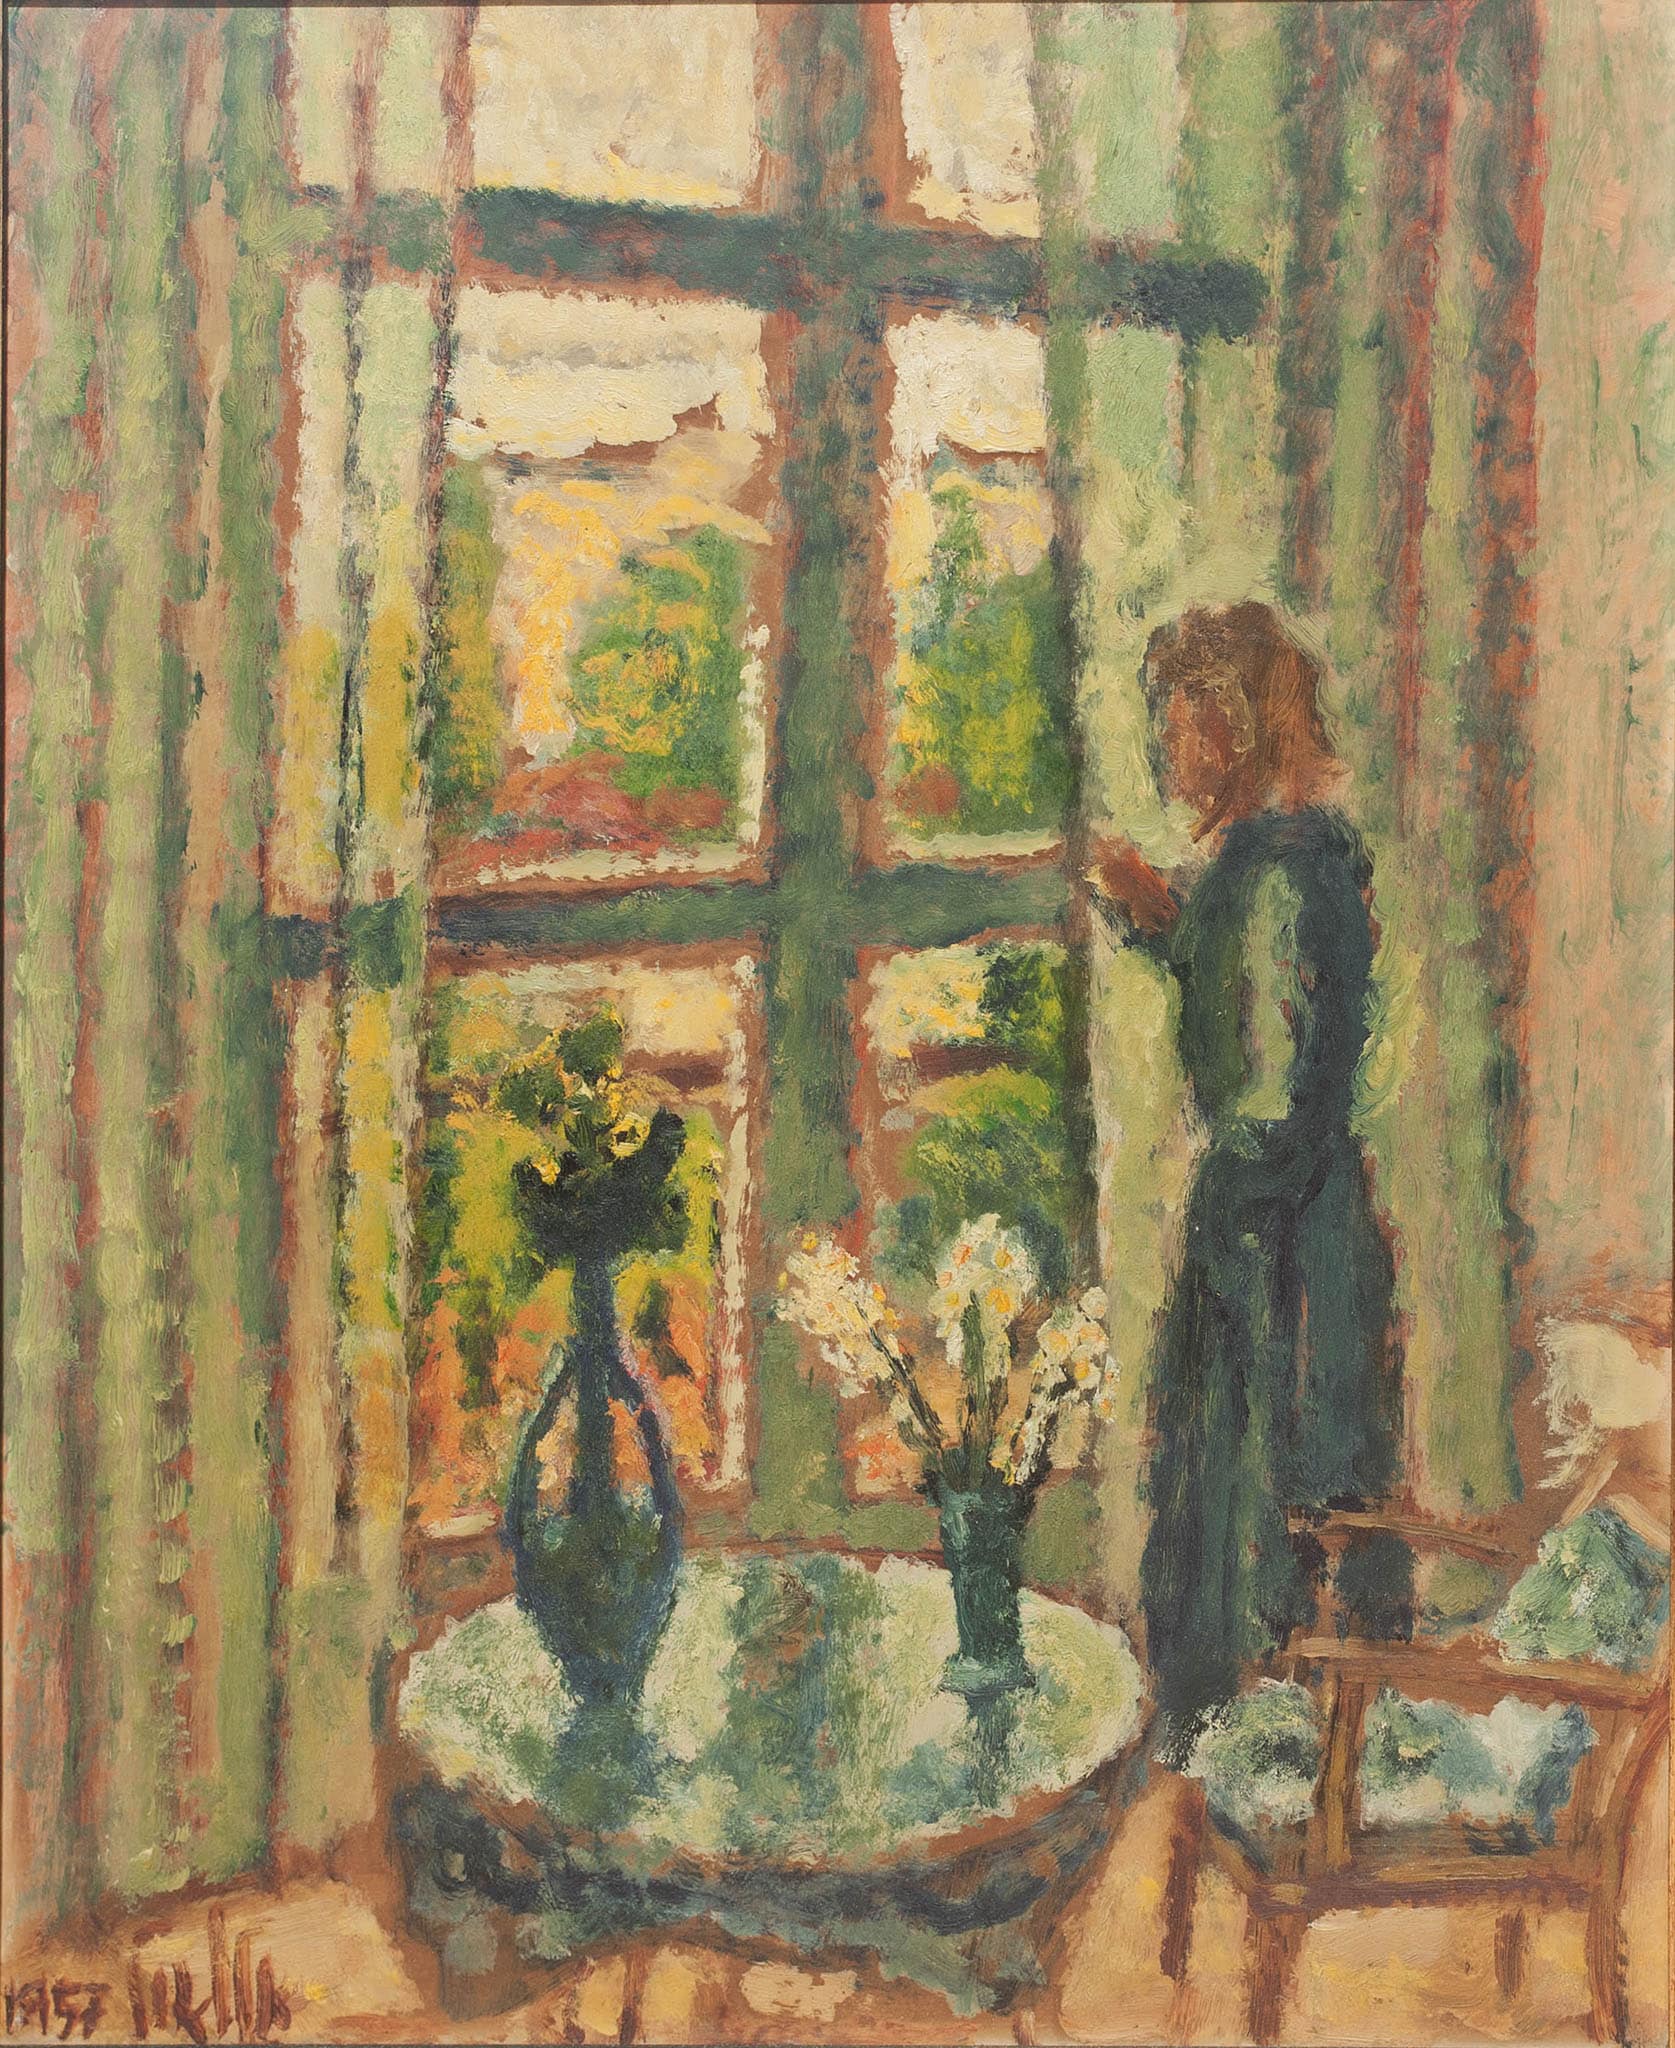 אריה אלואיל, "החלון", 1957, שמן על נייר מוצמד למזוניט, 45x55 ס"מ